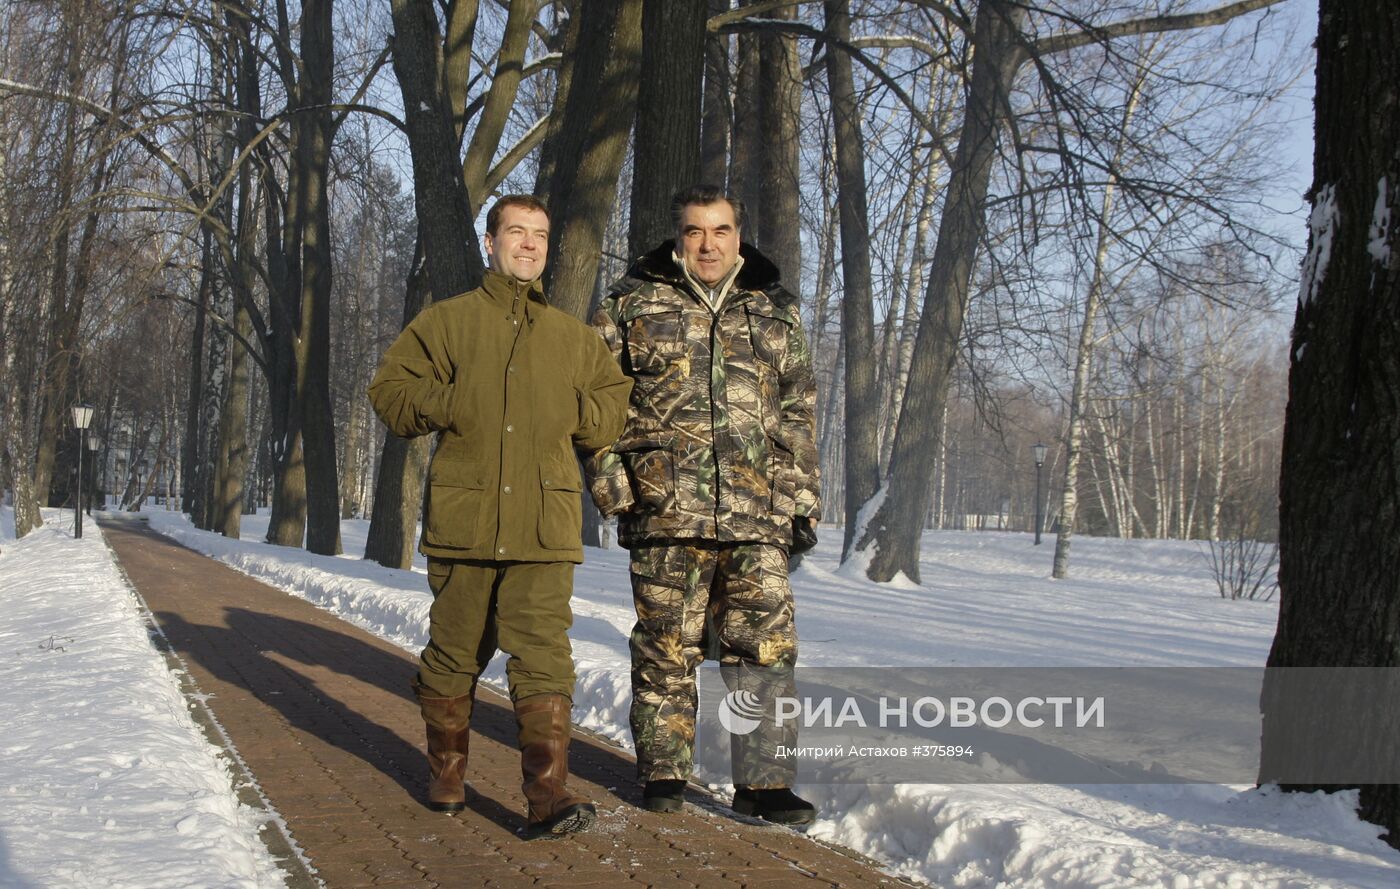 Рабочий визит президента Таджикистана Эмомали Рахмона в Россию